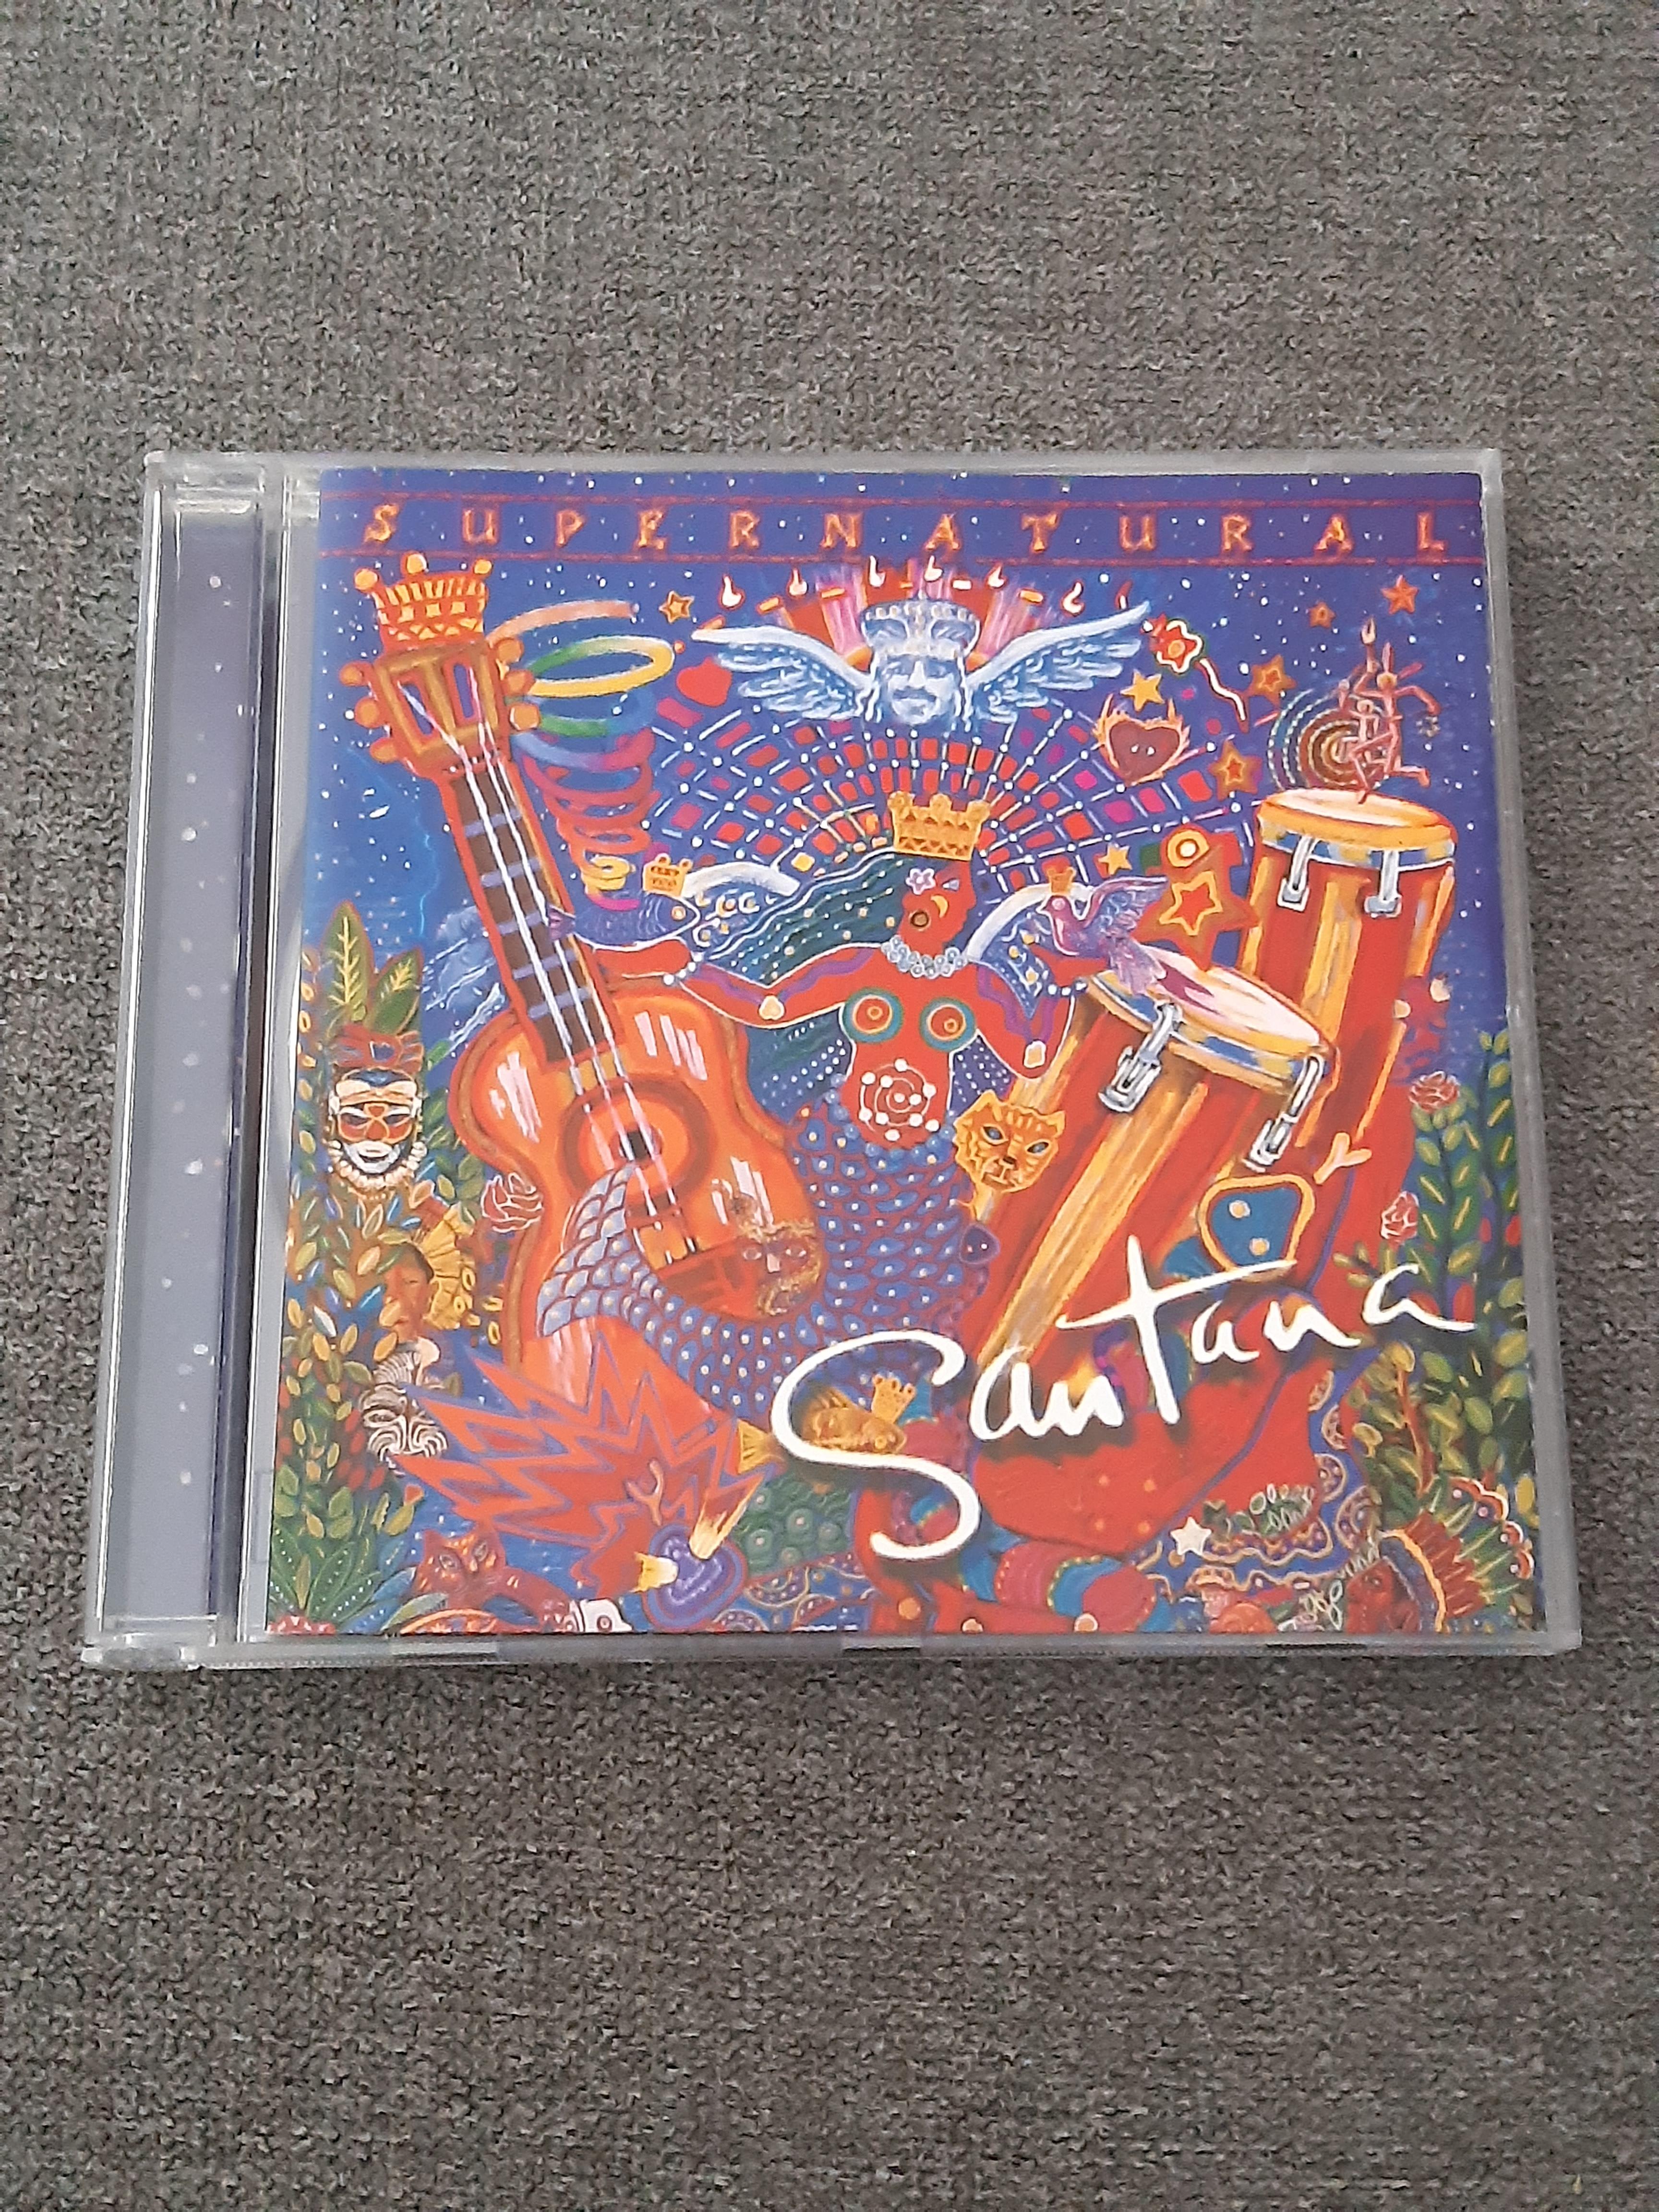 Santana - Supernatural - CD (käytetty)